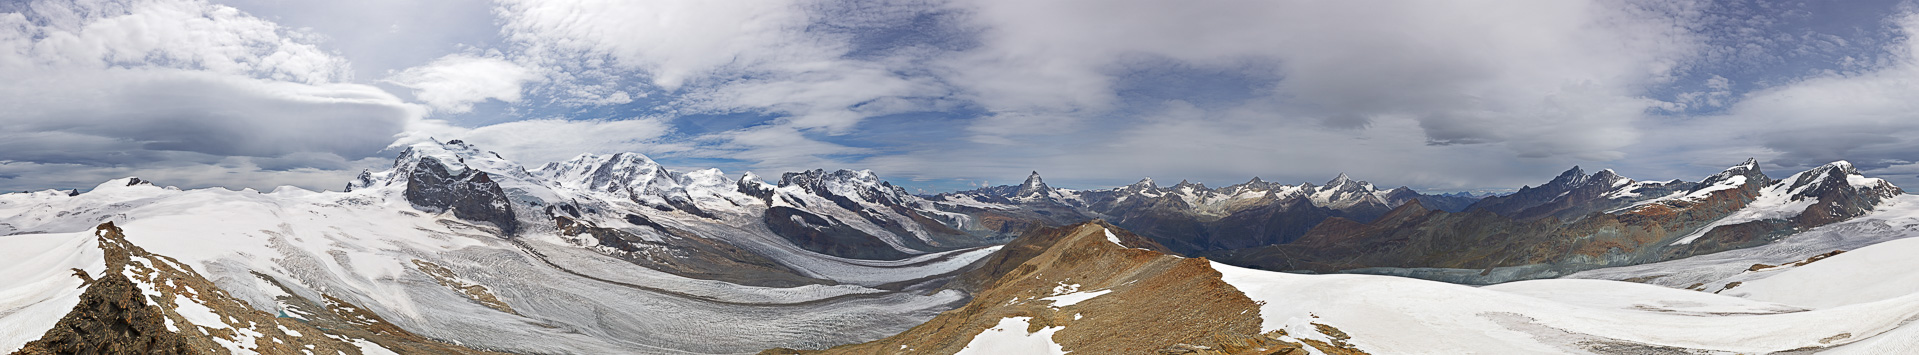 Das Stockhorn steht bereits mitten in der faszinierenden Gletscherwelt von Findelgletscher und Gornergletscher.